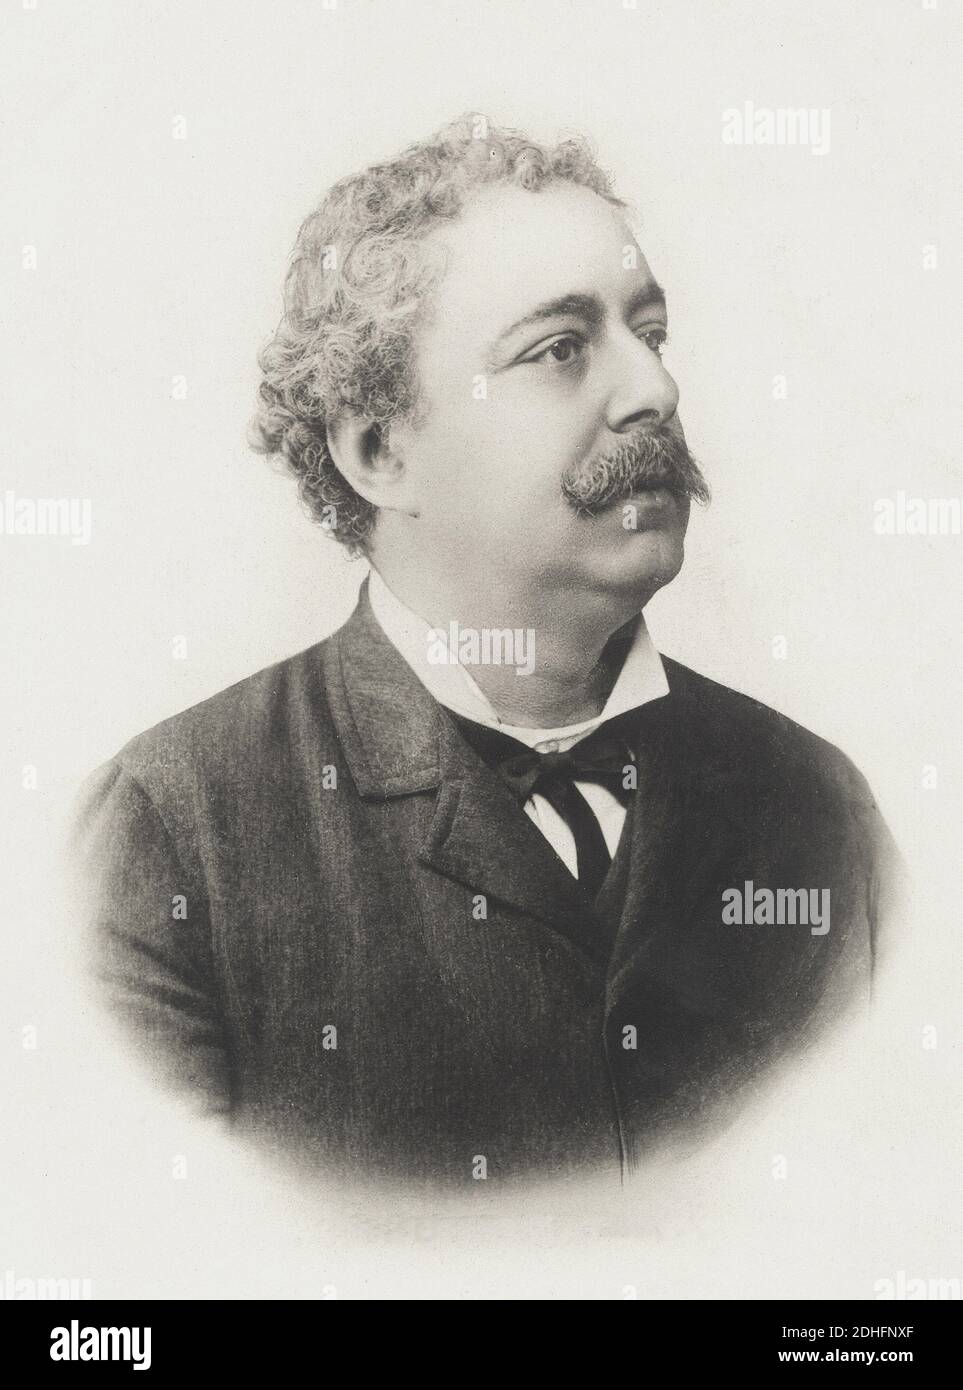 The most celebrated italian popular writer  EDMONDO DE  AMICIS (  1846 - 1908 ) , author of book CUORE ( 1866 ) - SCRITTORE - LETTERATURA - LITERATURE - LETTERATO - portrait - ritratto - profilo - profile - collar - colletto - tie - papillon - cravatta - baffi - moustache  ----   Archivio GBB Stock Photo